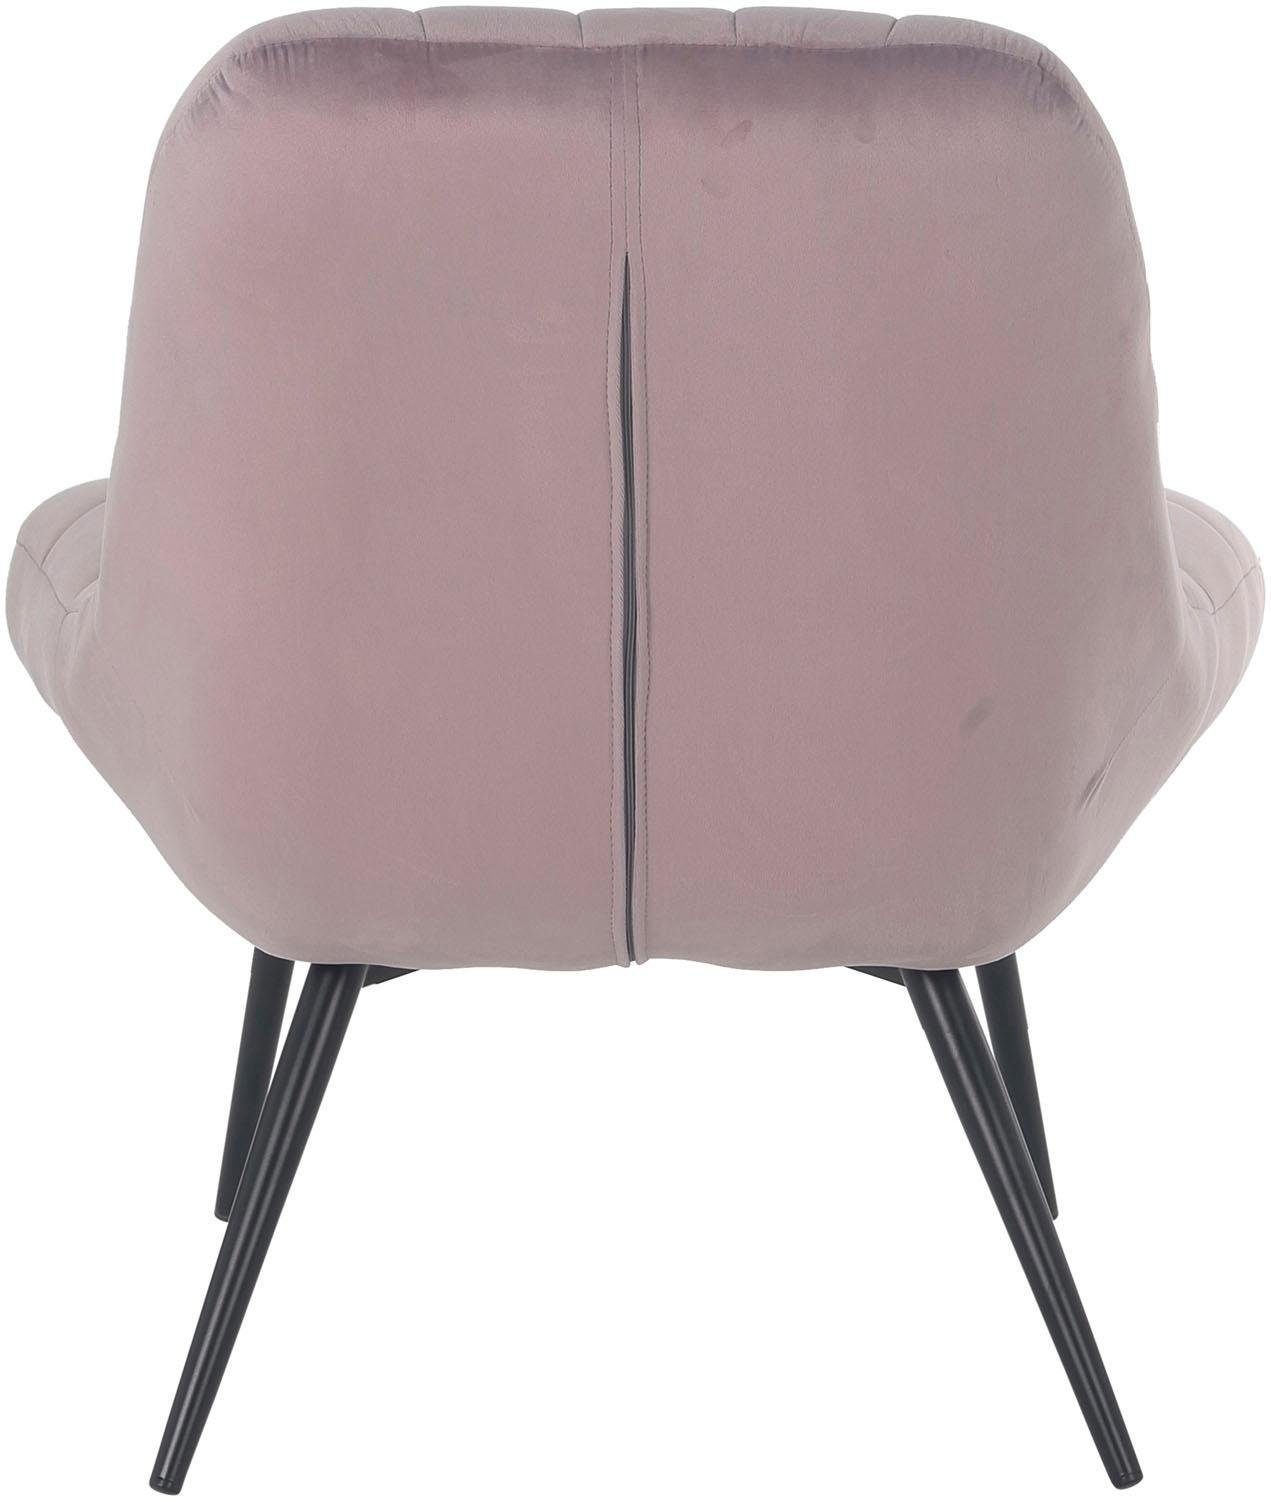 SalesFever Relaxsessel, mit naturfarbenen Beinen rosa/schwarz oder XXL-Steppung, schwarzen mit